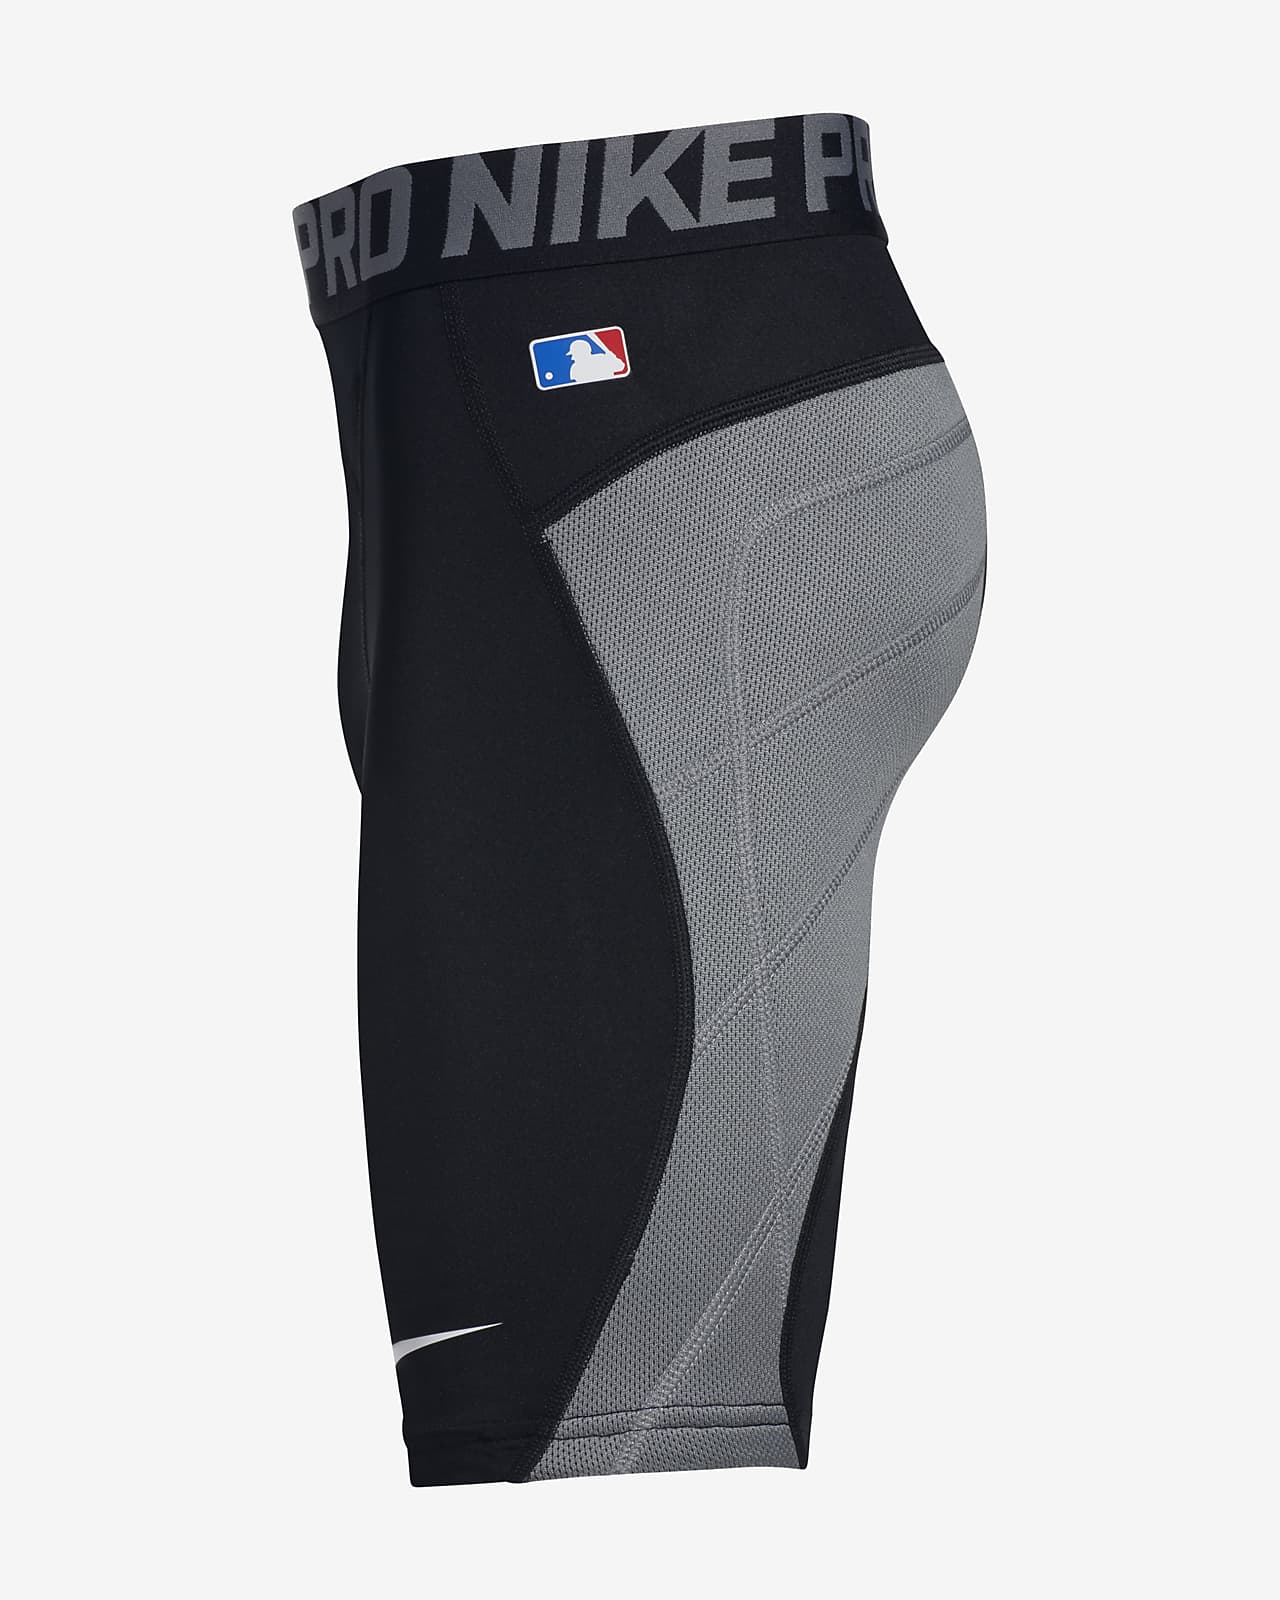 Used Nike SLIDING SHORTS MD Baseball and Softball Clothing Baseball and  Softball Clothing